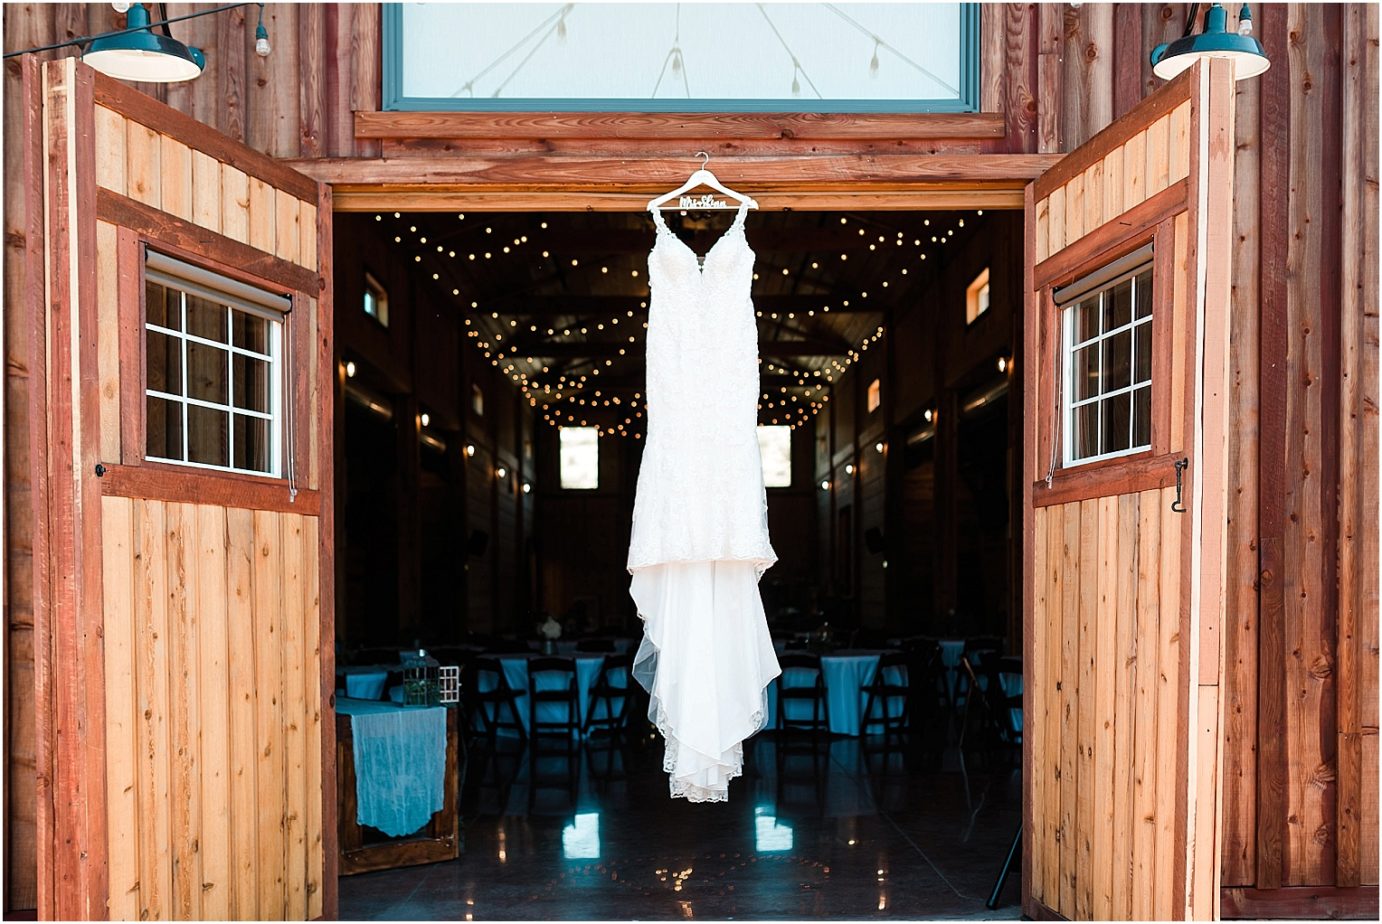 Sugar Pine Barn Wedding Dress shot